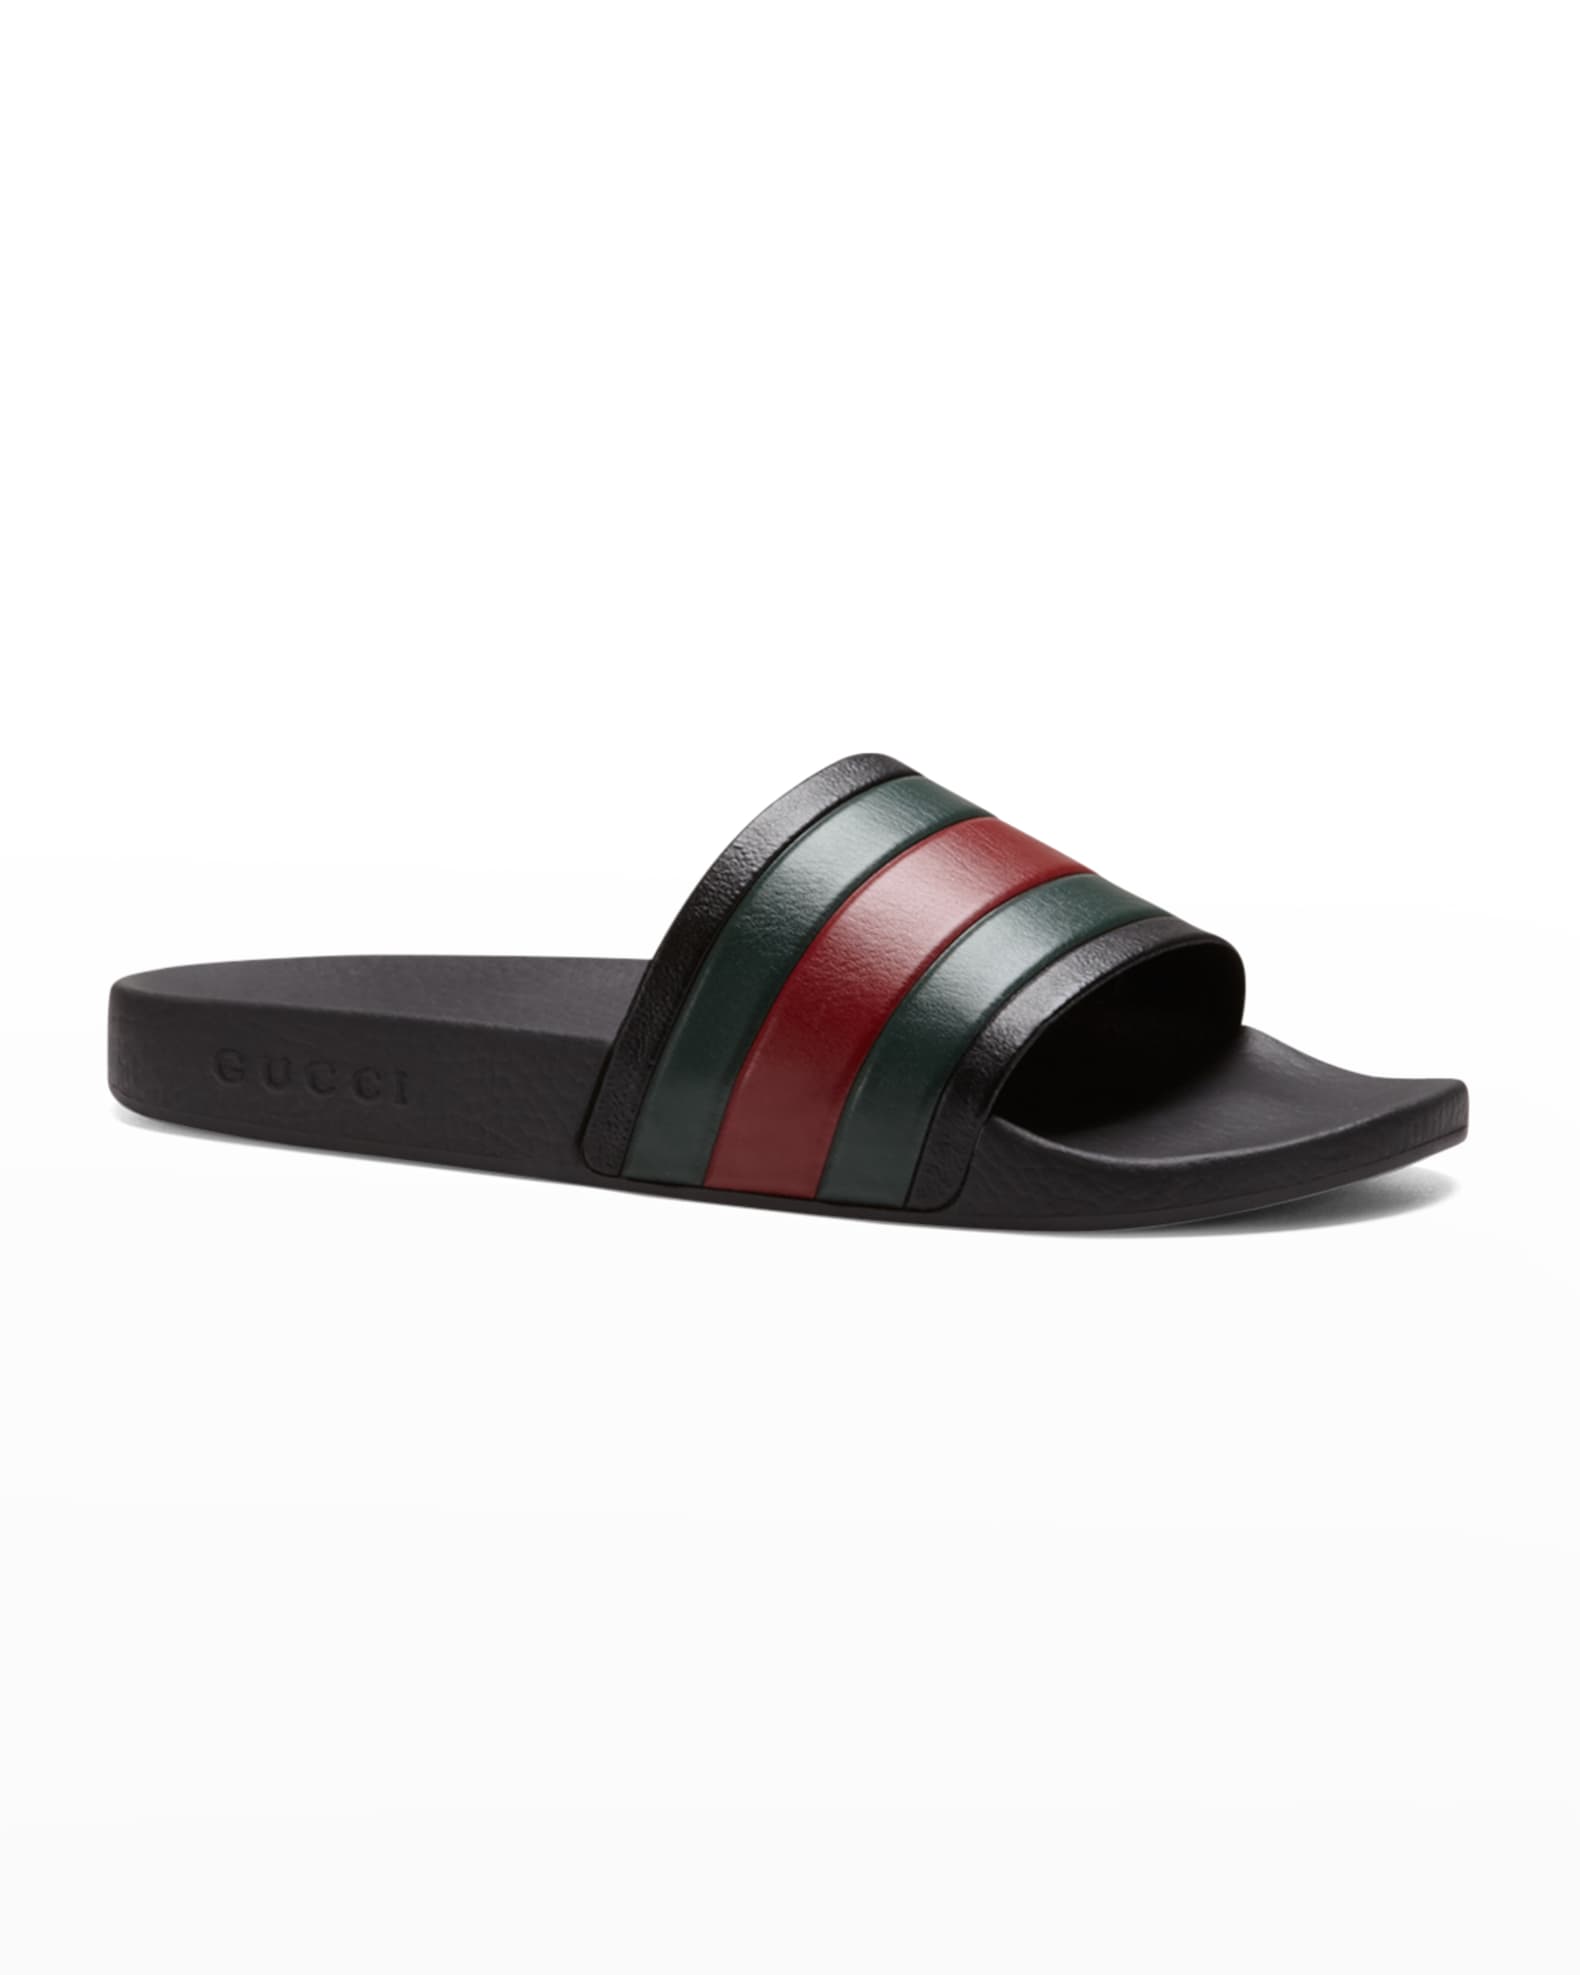 Gucci Pursuit '72 Rubber Slide Sandals | Neiman Marcus